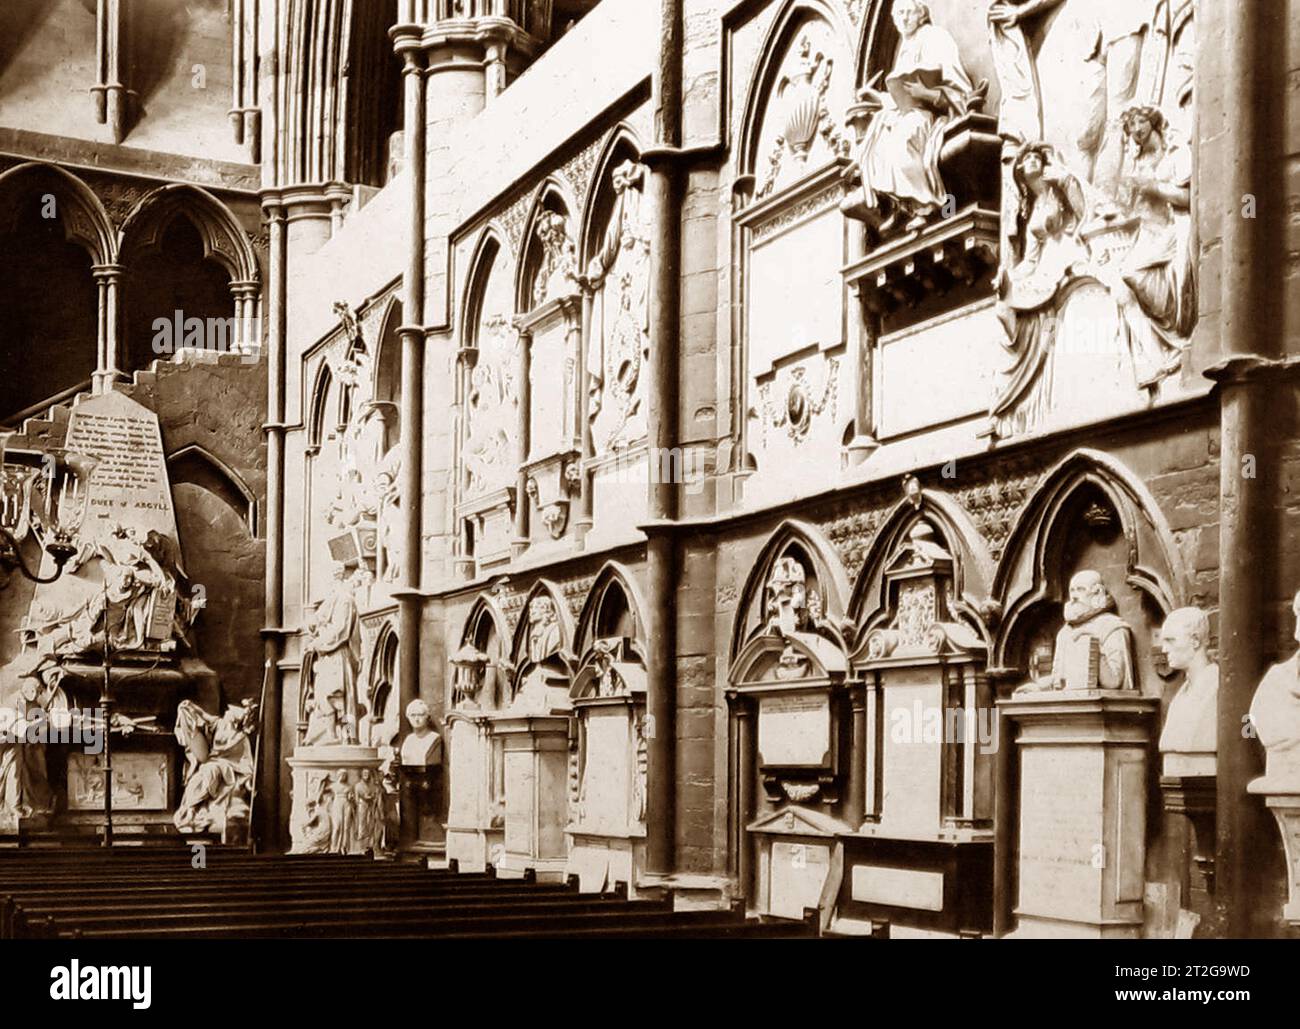 Poets' Corner, Abbaye de Westminster, Londres, époque victorienne Banque D'Images